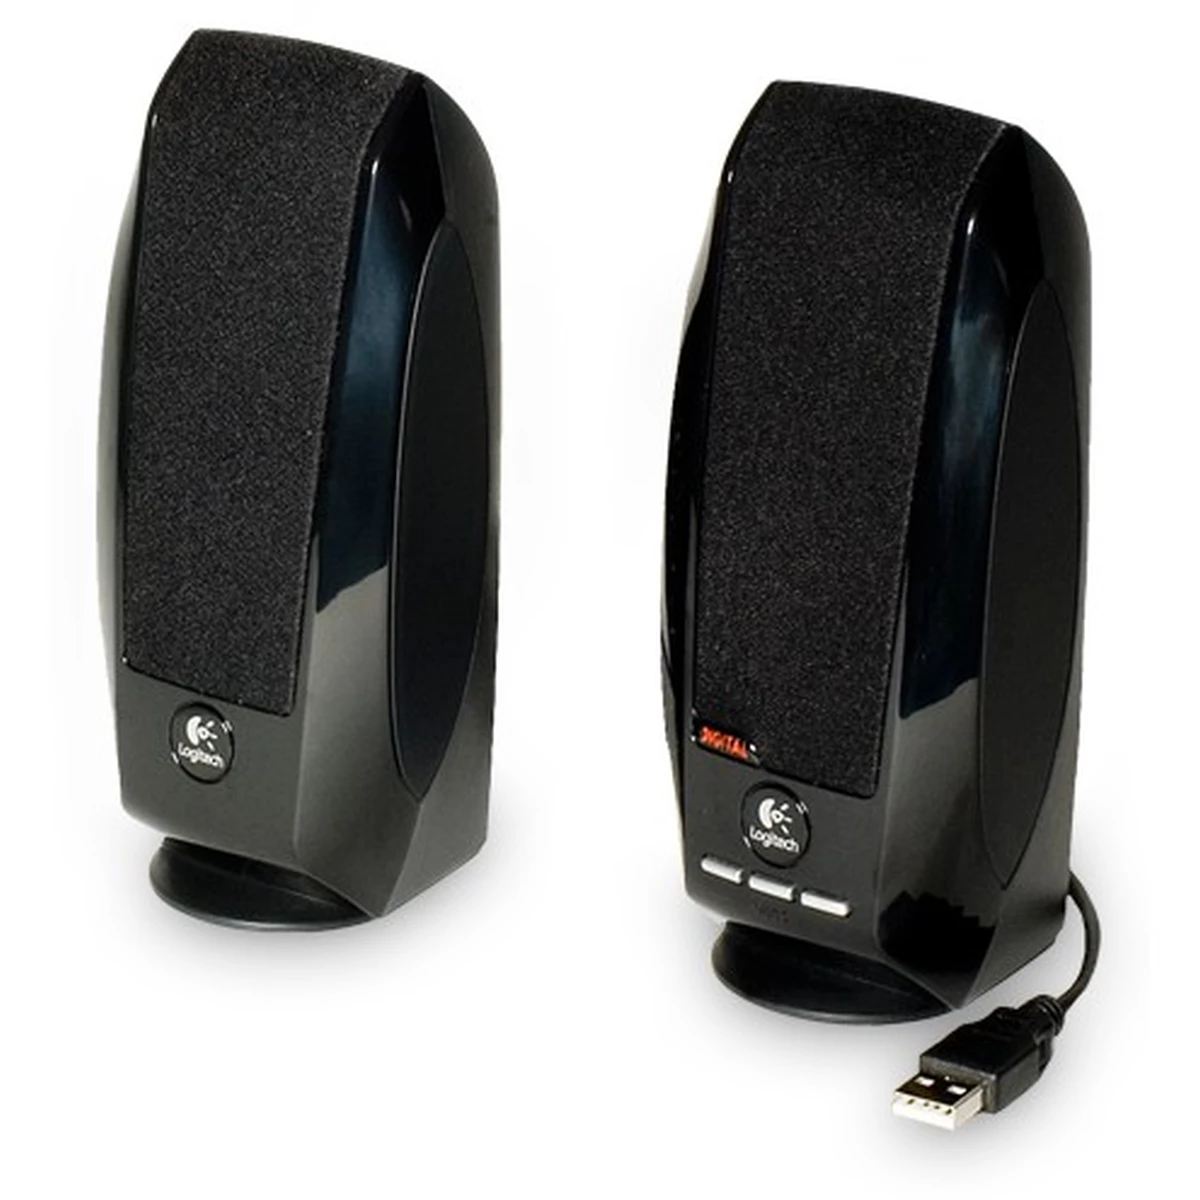 Logitech S150 Speaker System